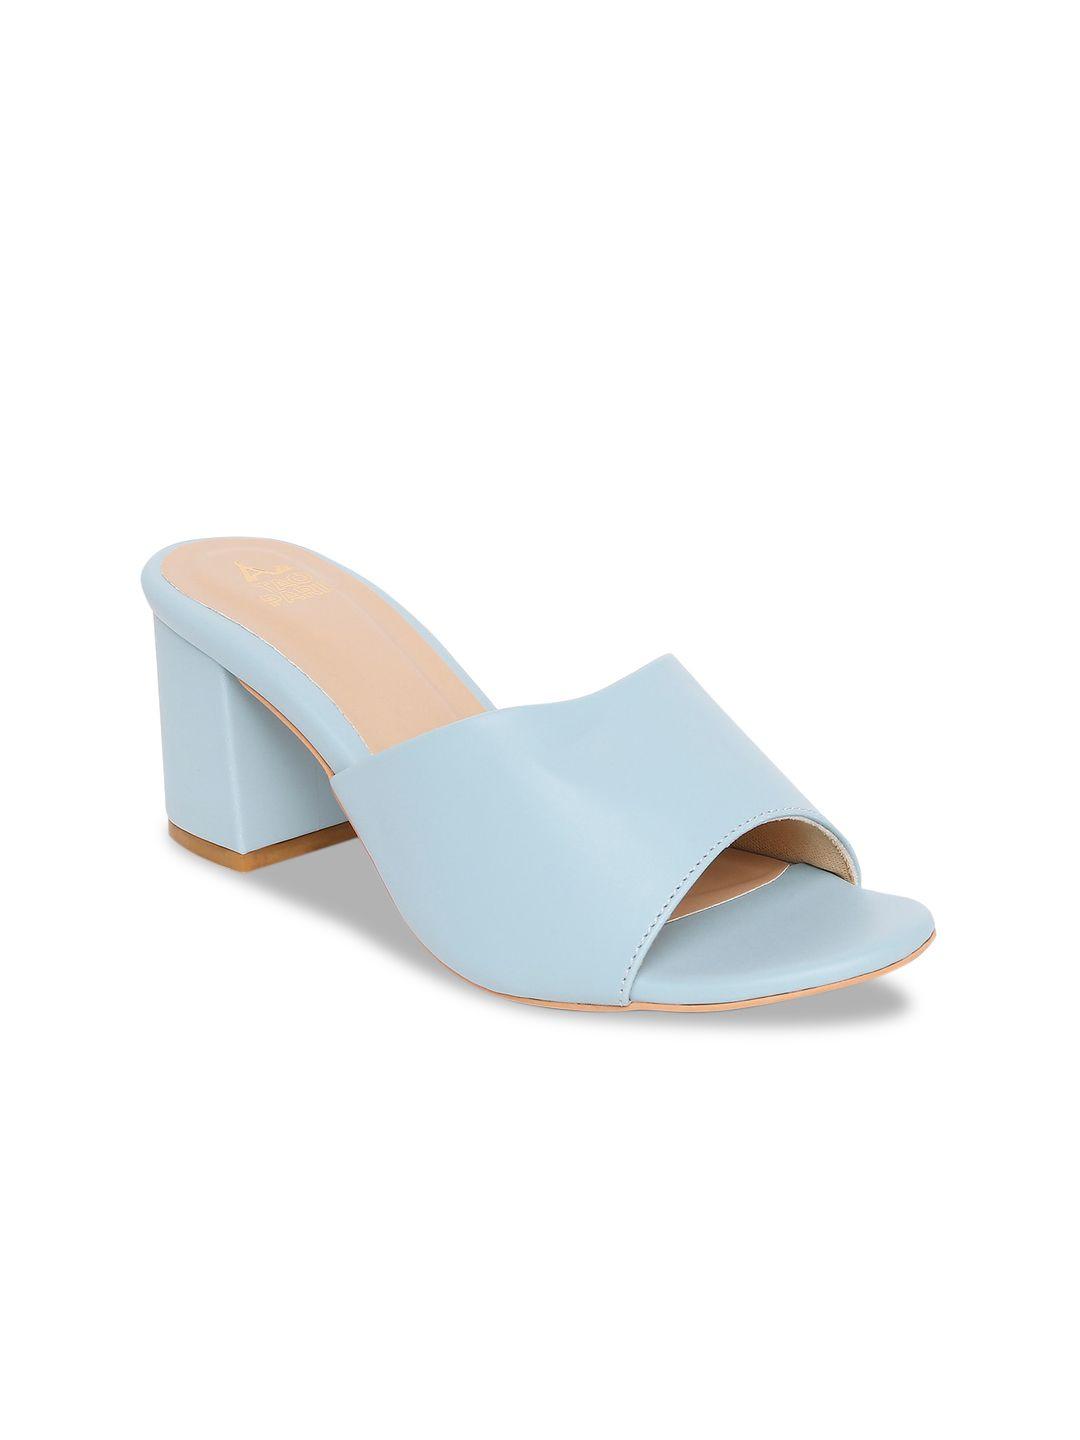 tao paris women blue solid block heels